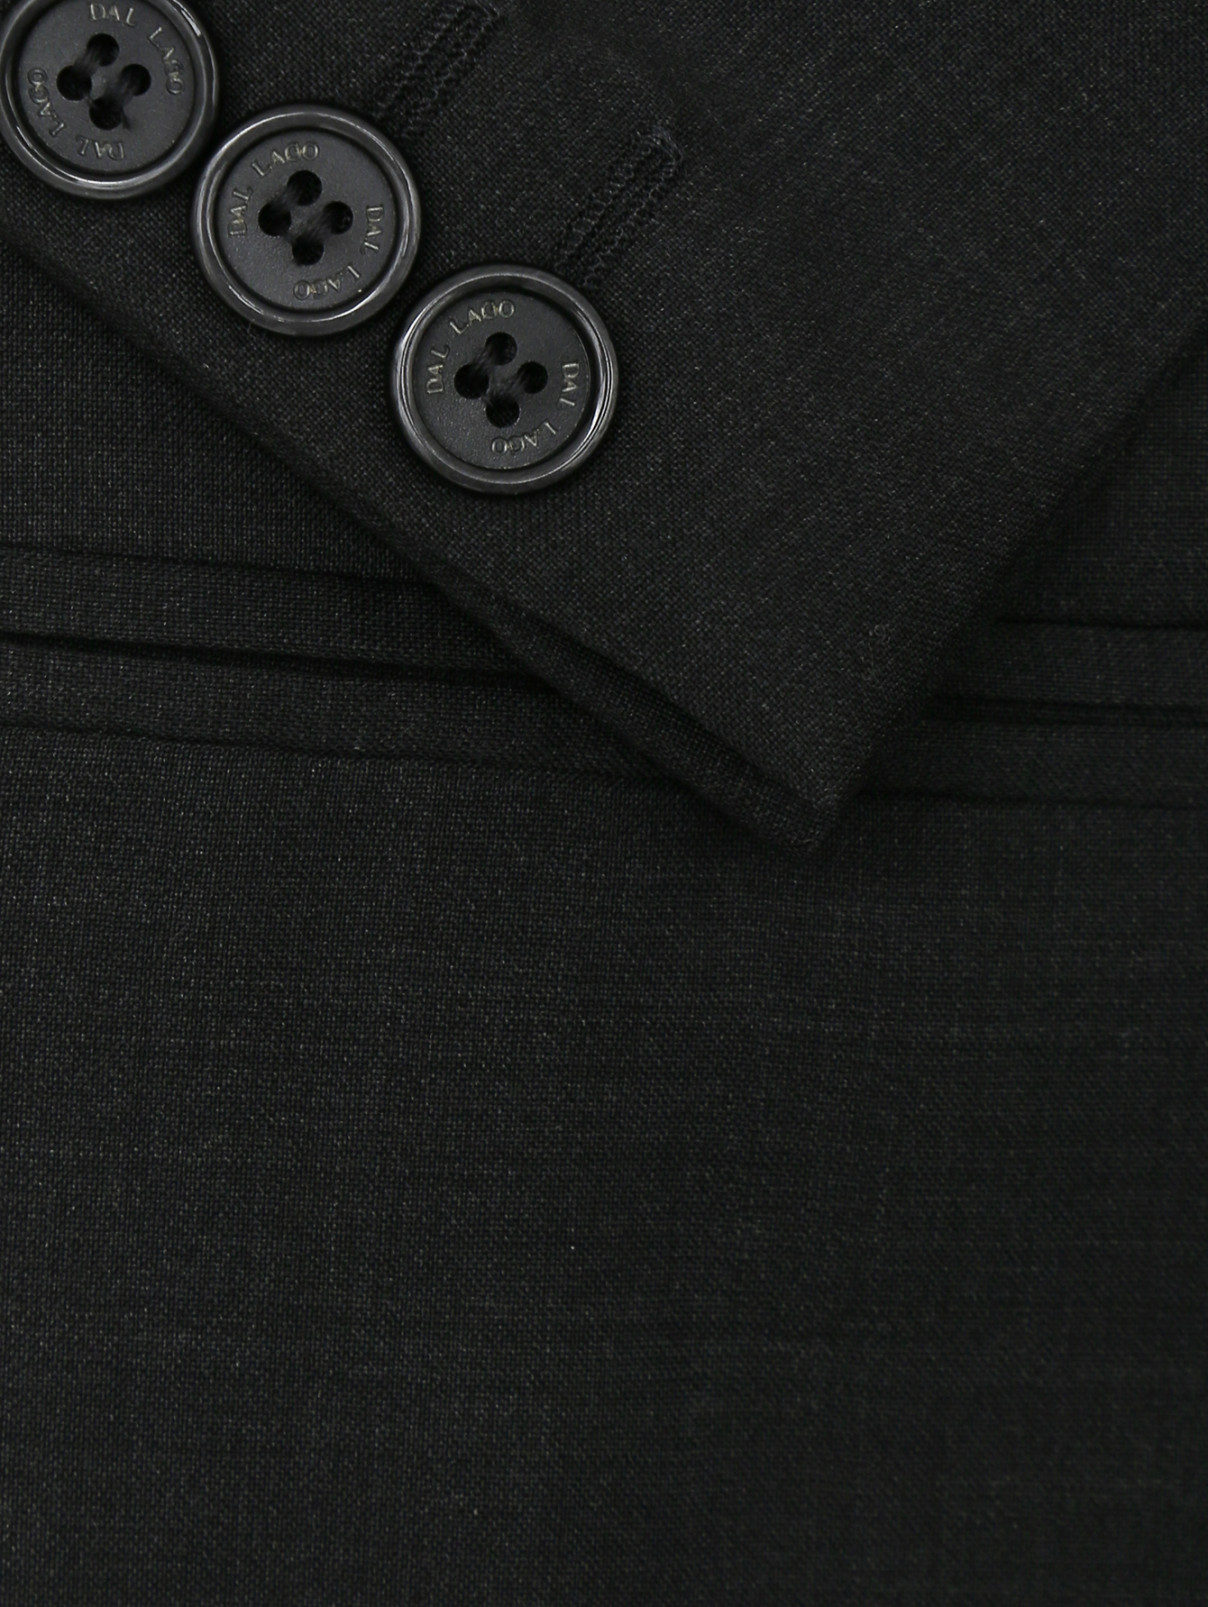 Пиджак классический из шерсти Dal Lago  –  Деталь  – Цвет:  Серый